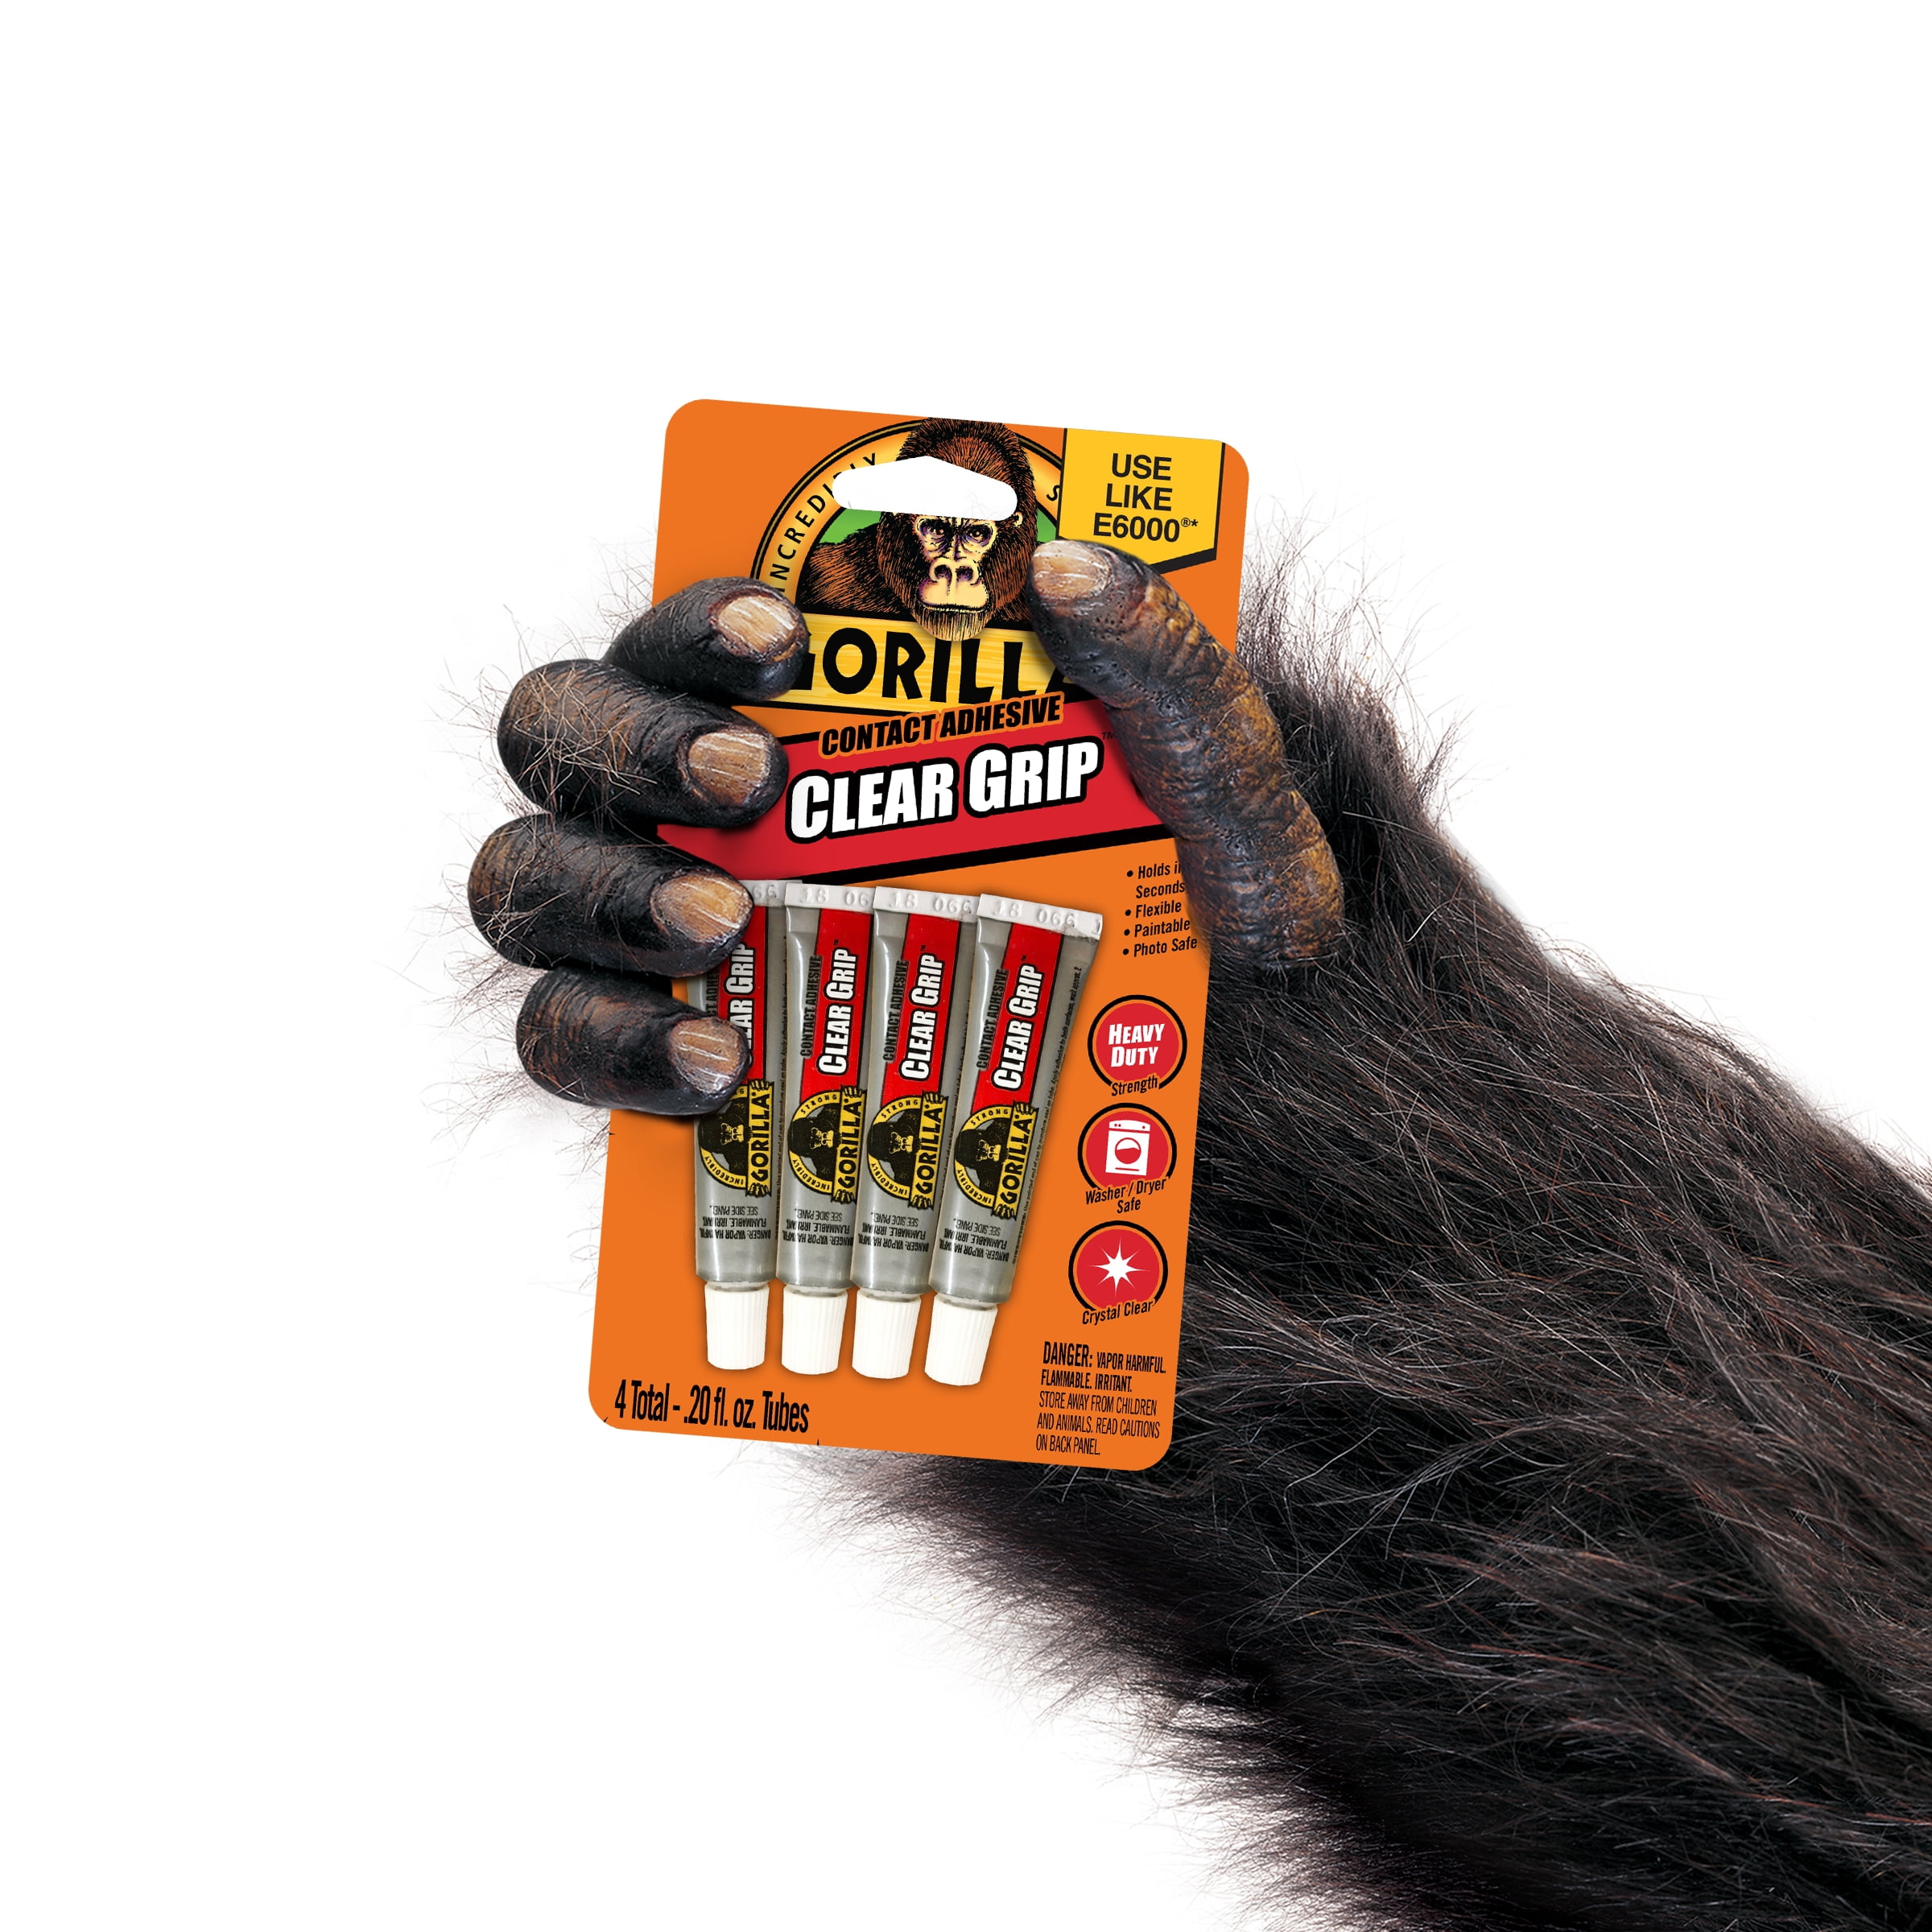 Gorilla Clear Grip Glue - Set of 4, 0.2 oz each